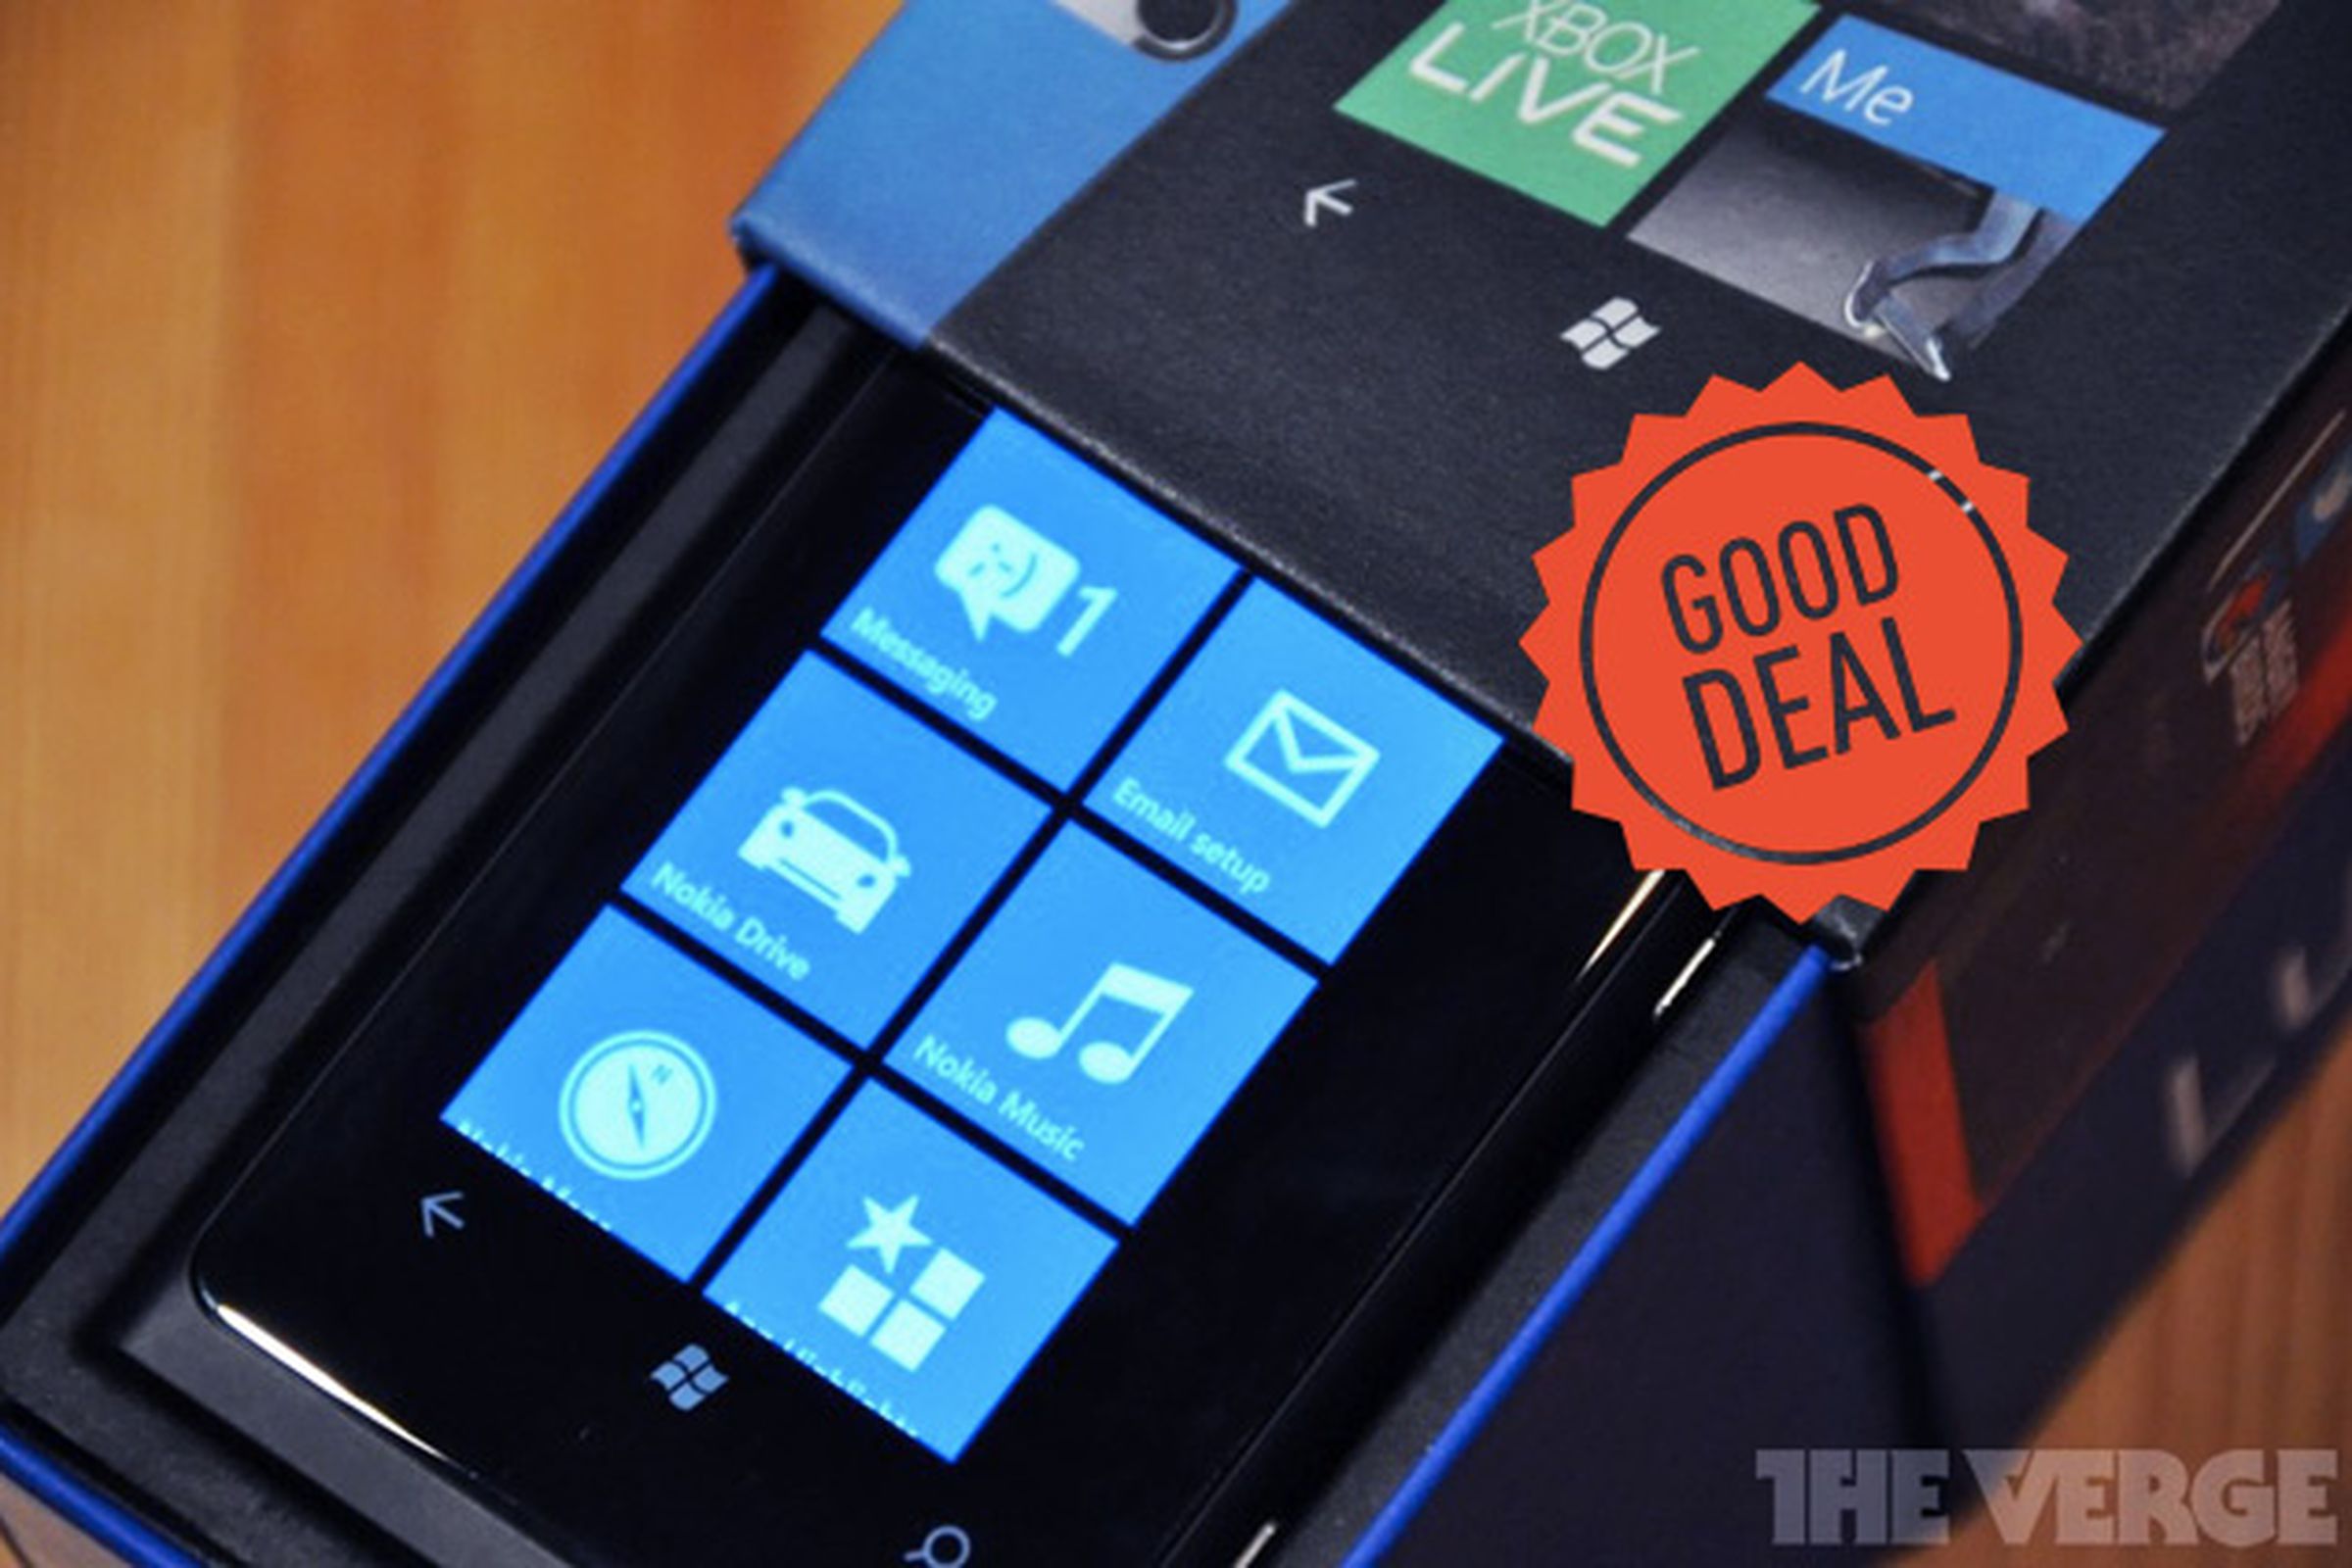 Nokia Lumia 800 good deal_640